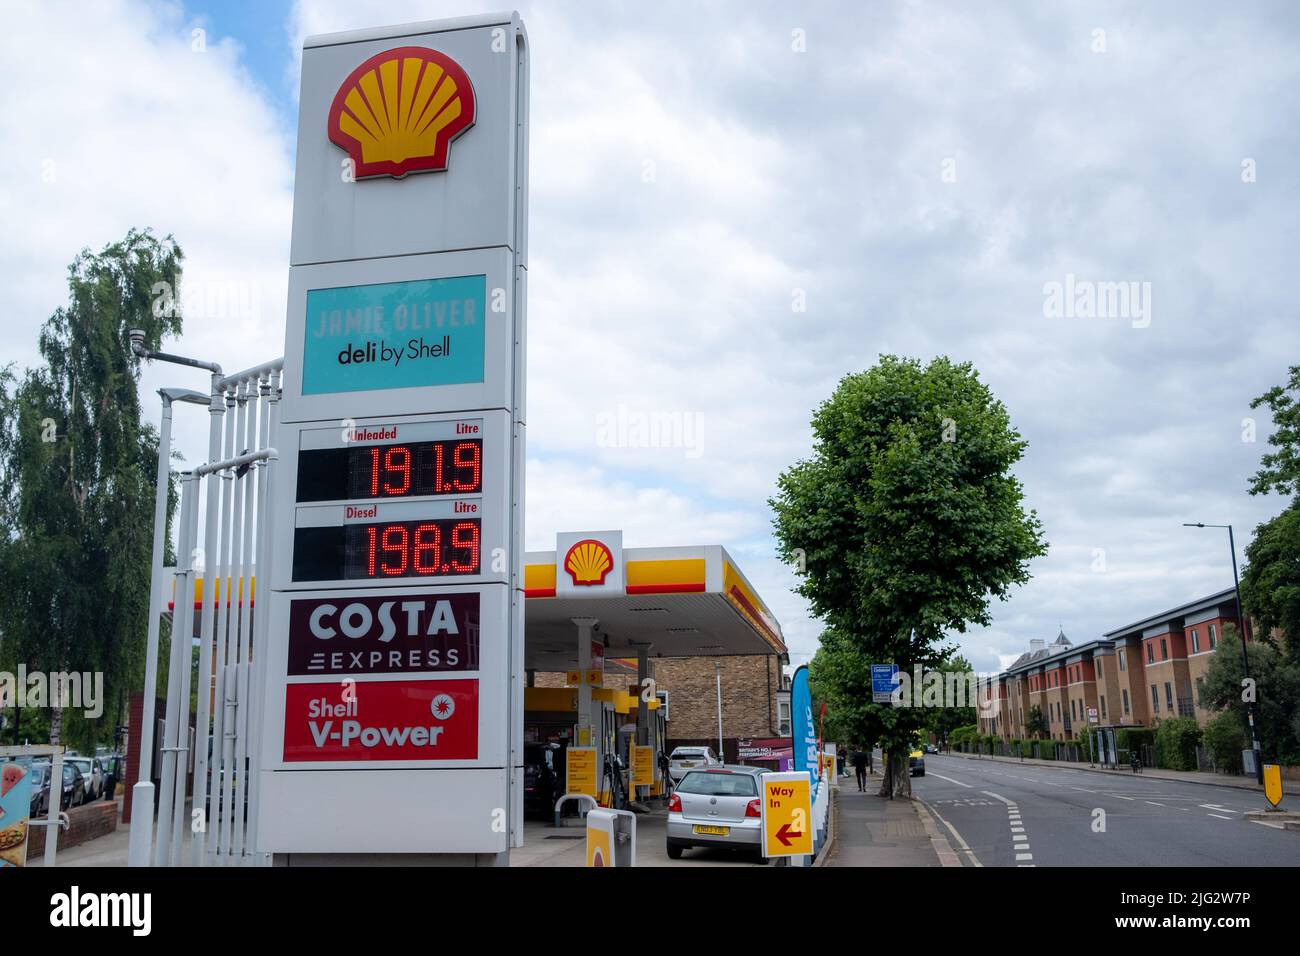 Londres- Junio 2022: Londres - Servicio Shell de señales y precios de la gasolinera Foto de stock